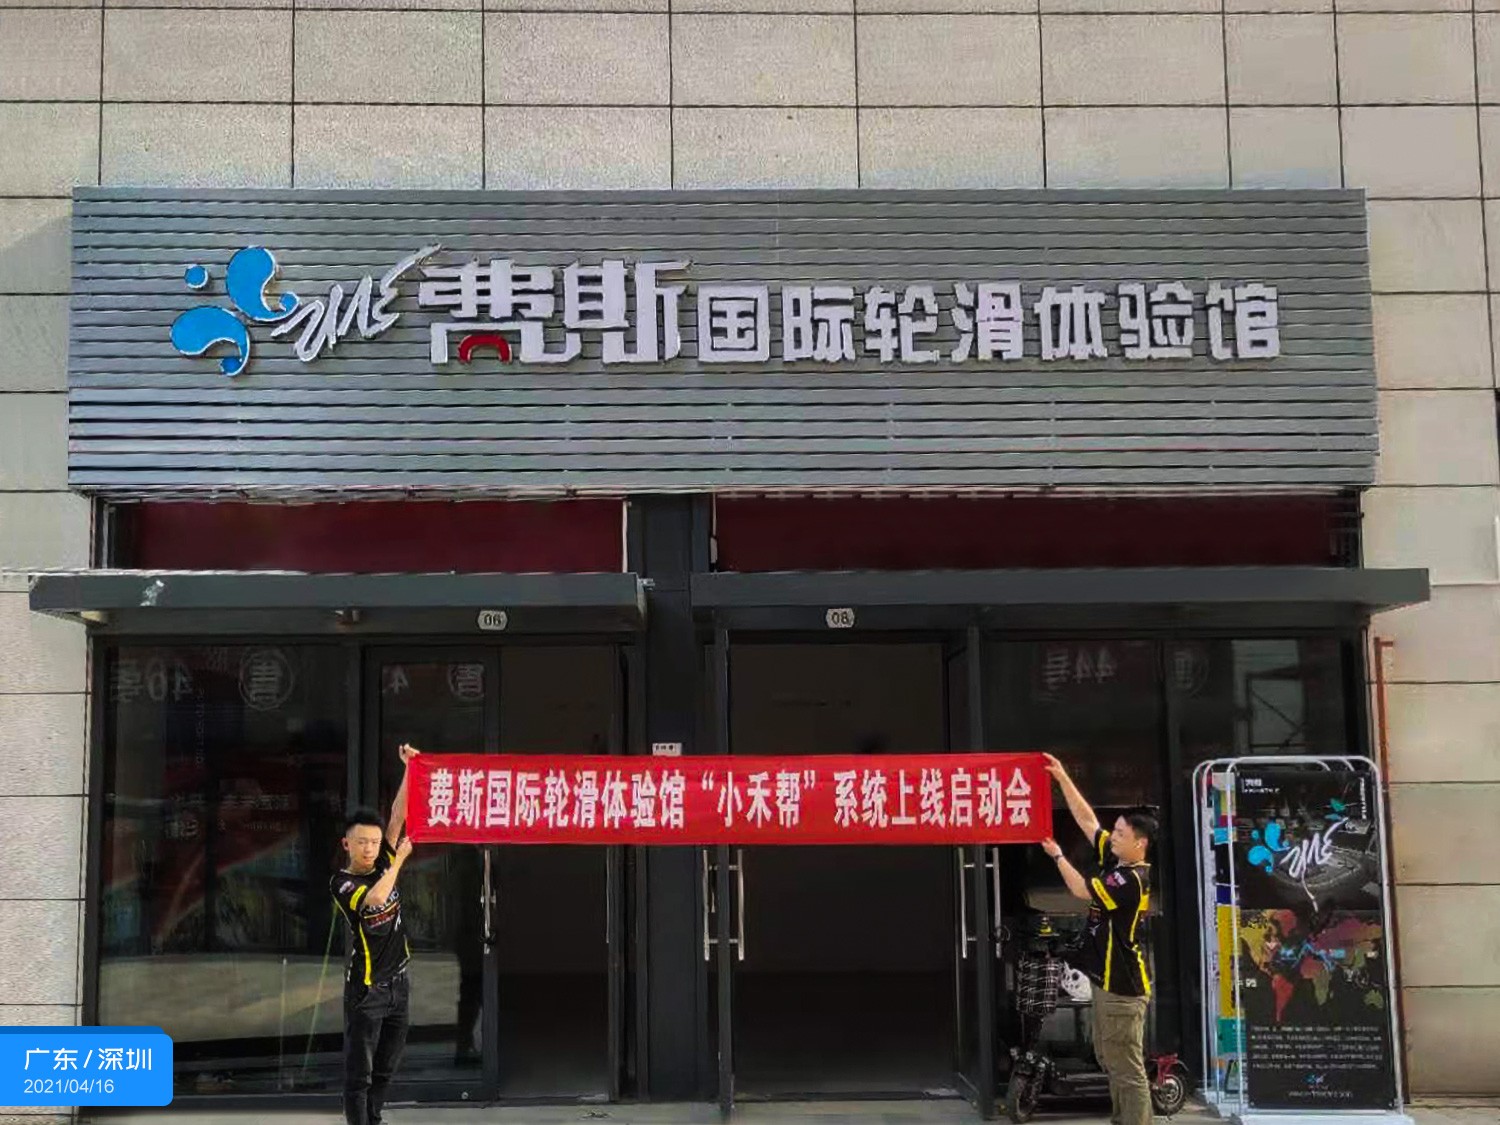  北京费斯国际轮滑体验馆签约小禾帮培训管理系统